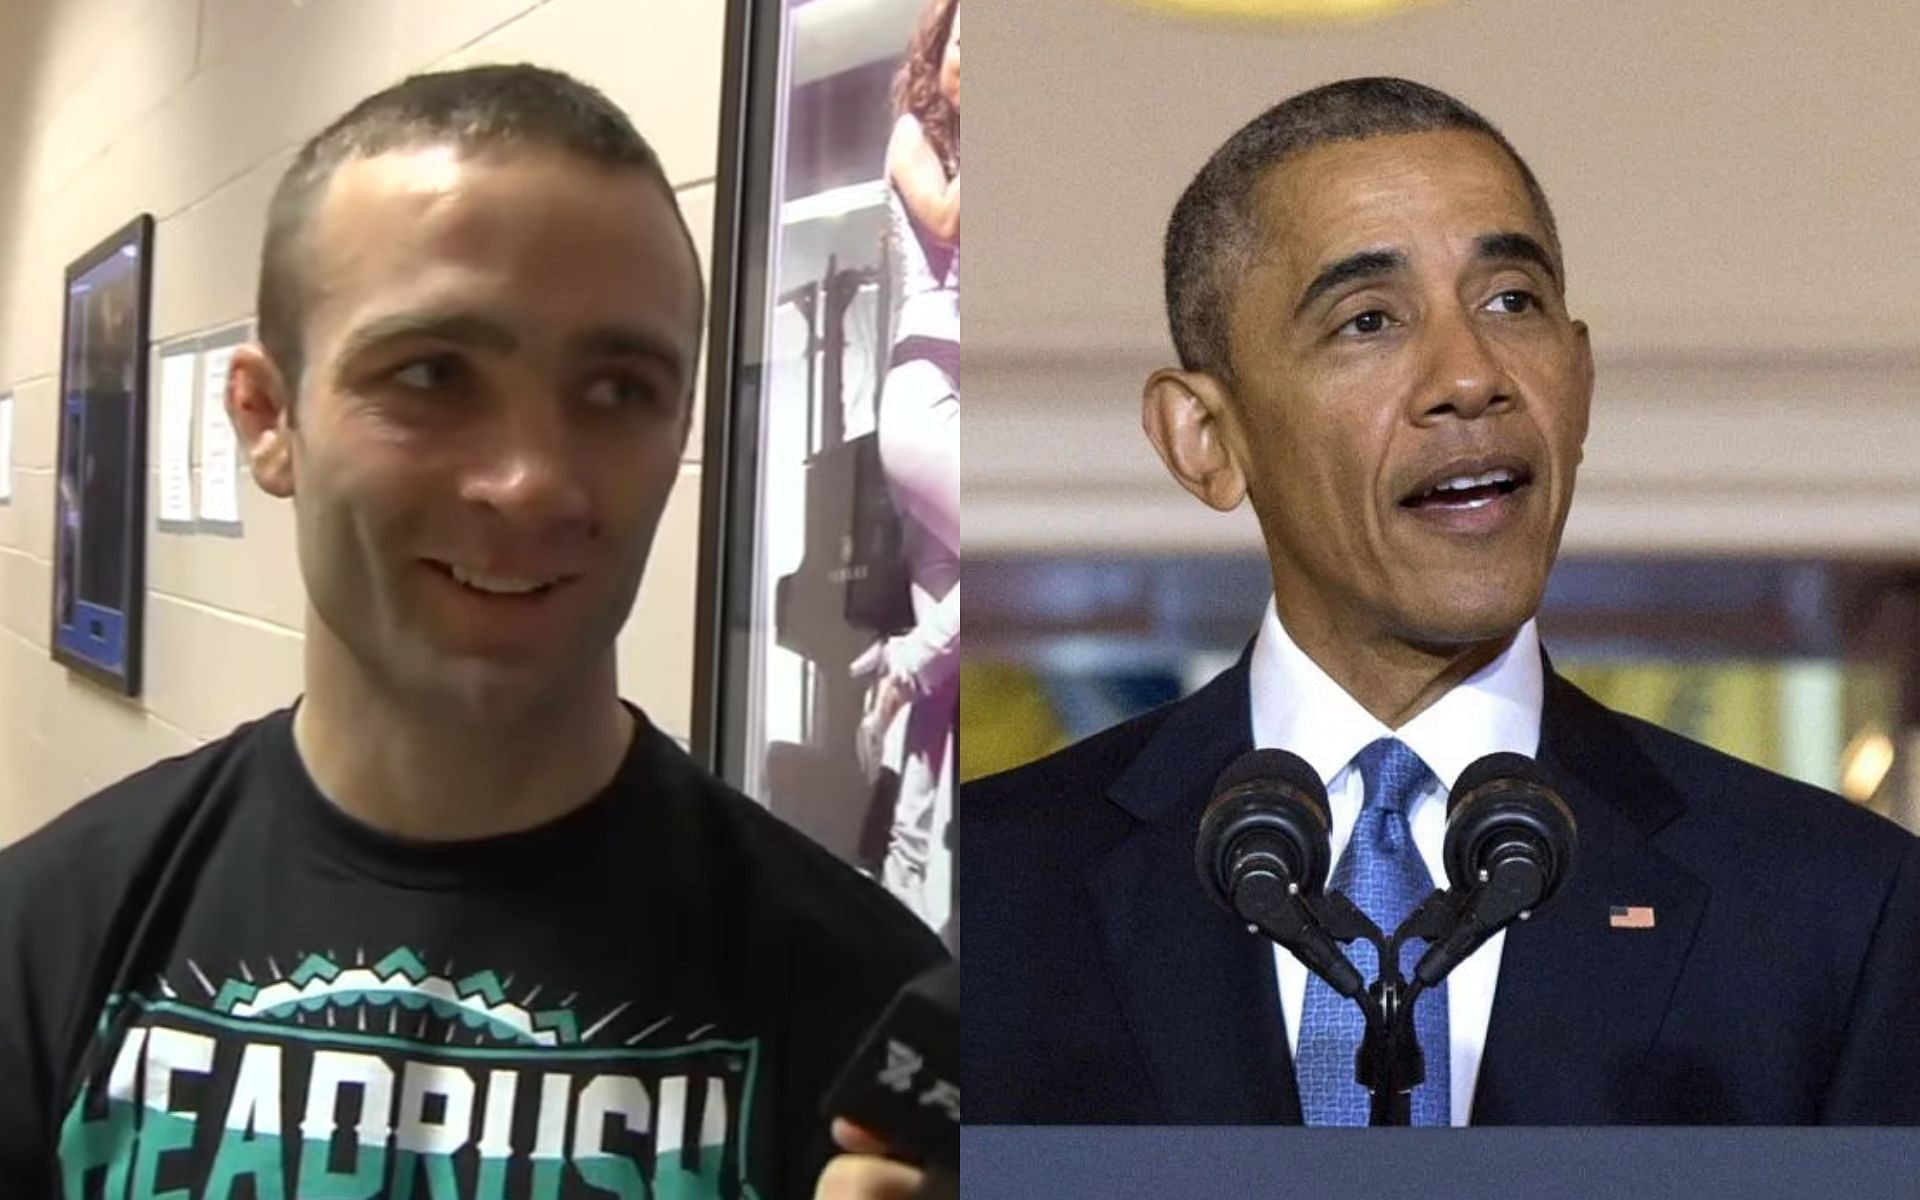 Jacob Volkmann (left), Barack Obama (right) [Images courtesy of Ariel Helwani on YouTube]